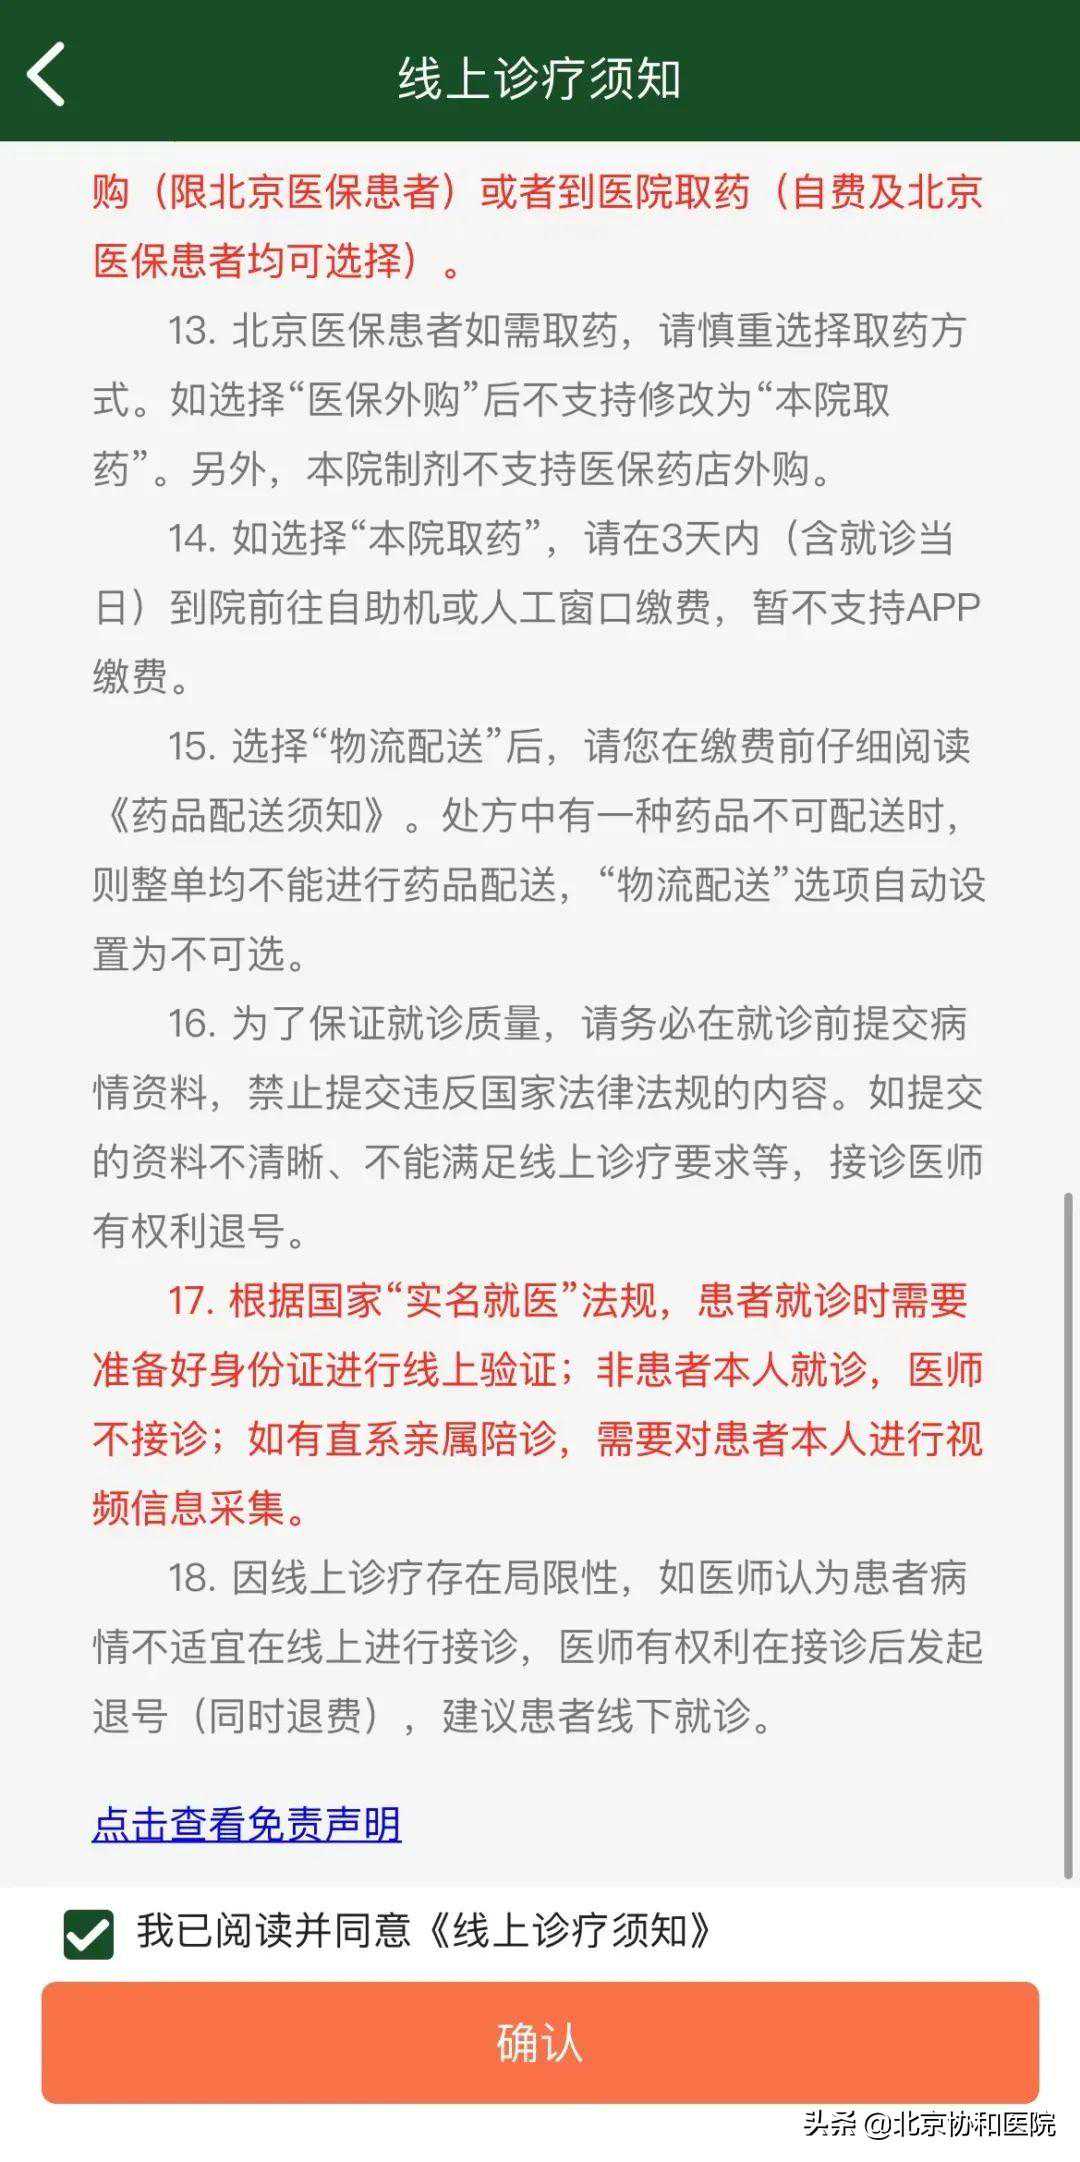 上海代怀客服电话,本周北京协和医院每天半日门诊，不戴口罩将被劝阻入内